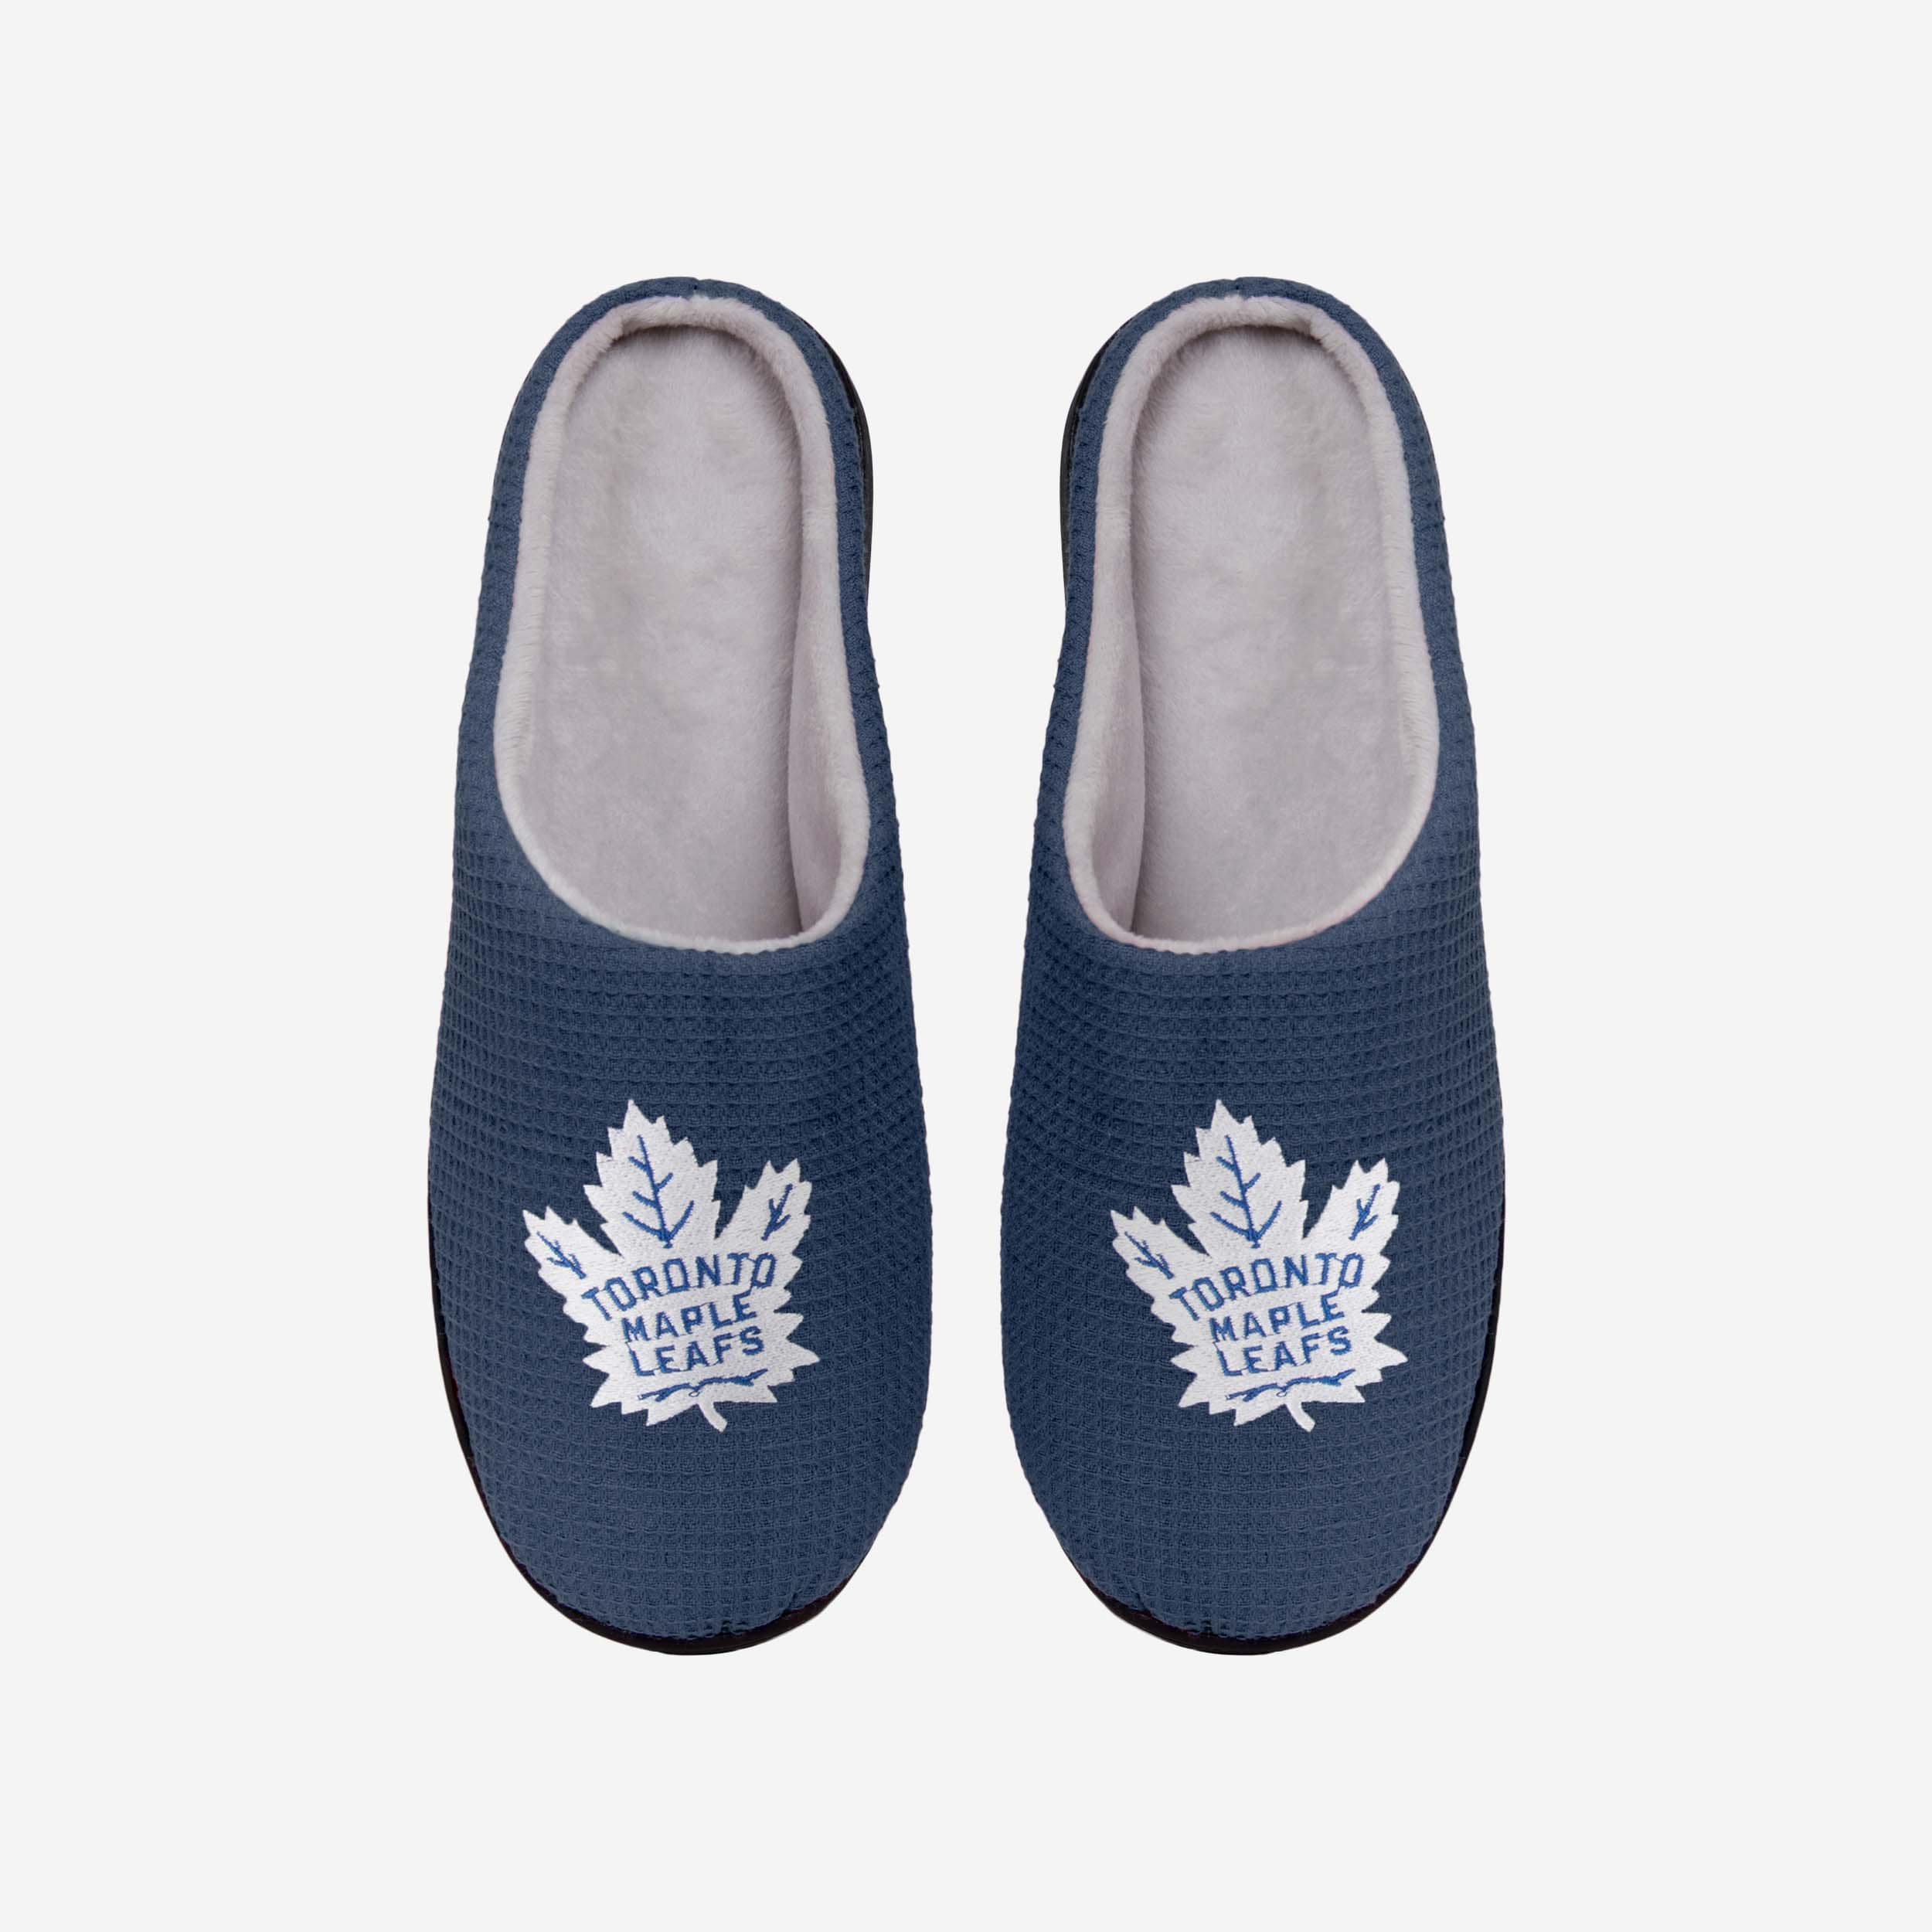 FOCO Toronto Maple Leafs Memory Foam Slide Slipper - XL - Men